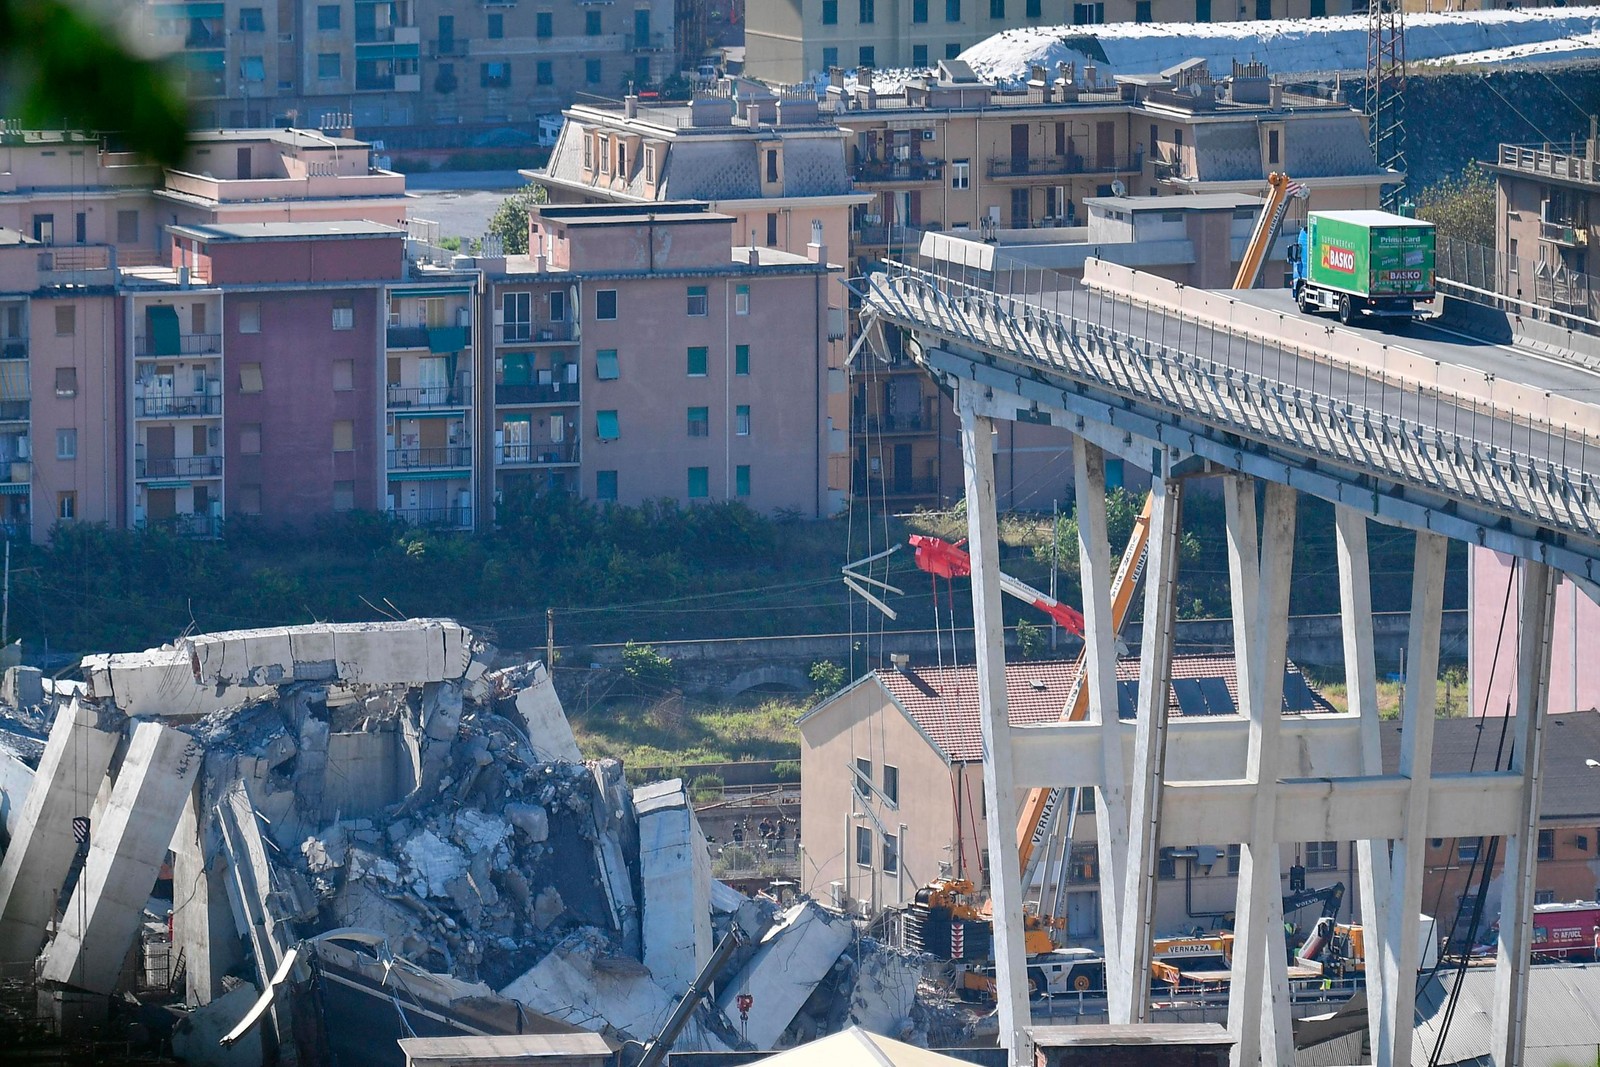 Buscas por sobreviventes de queda de ponte continuam em Gênova; número de mortos sobe para 39